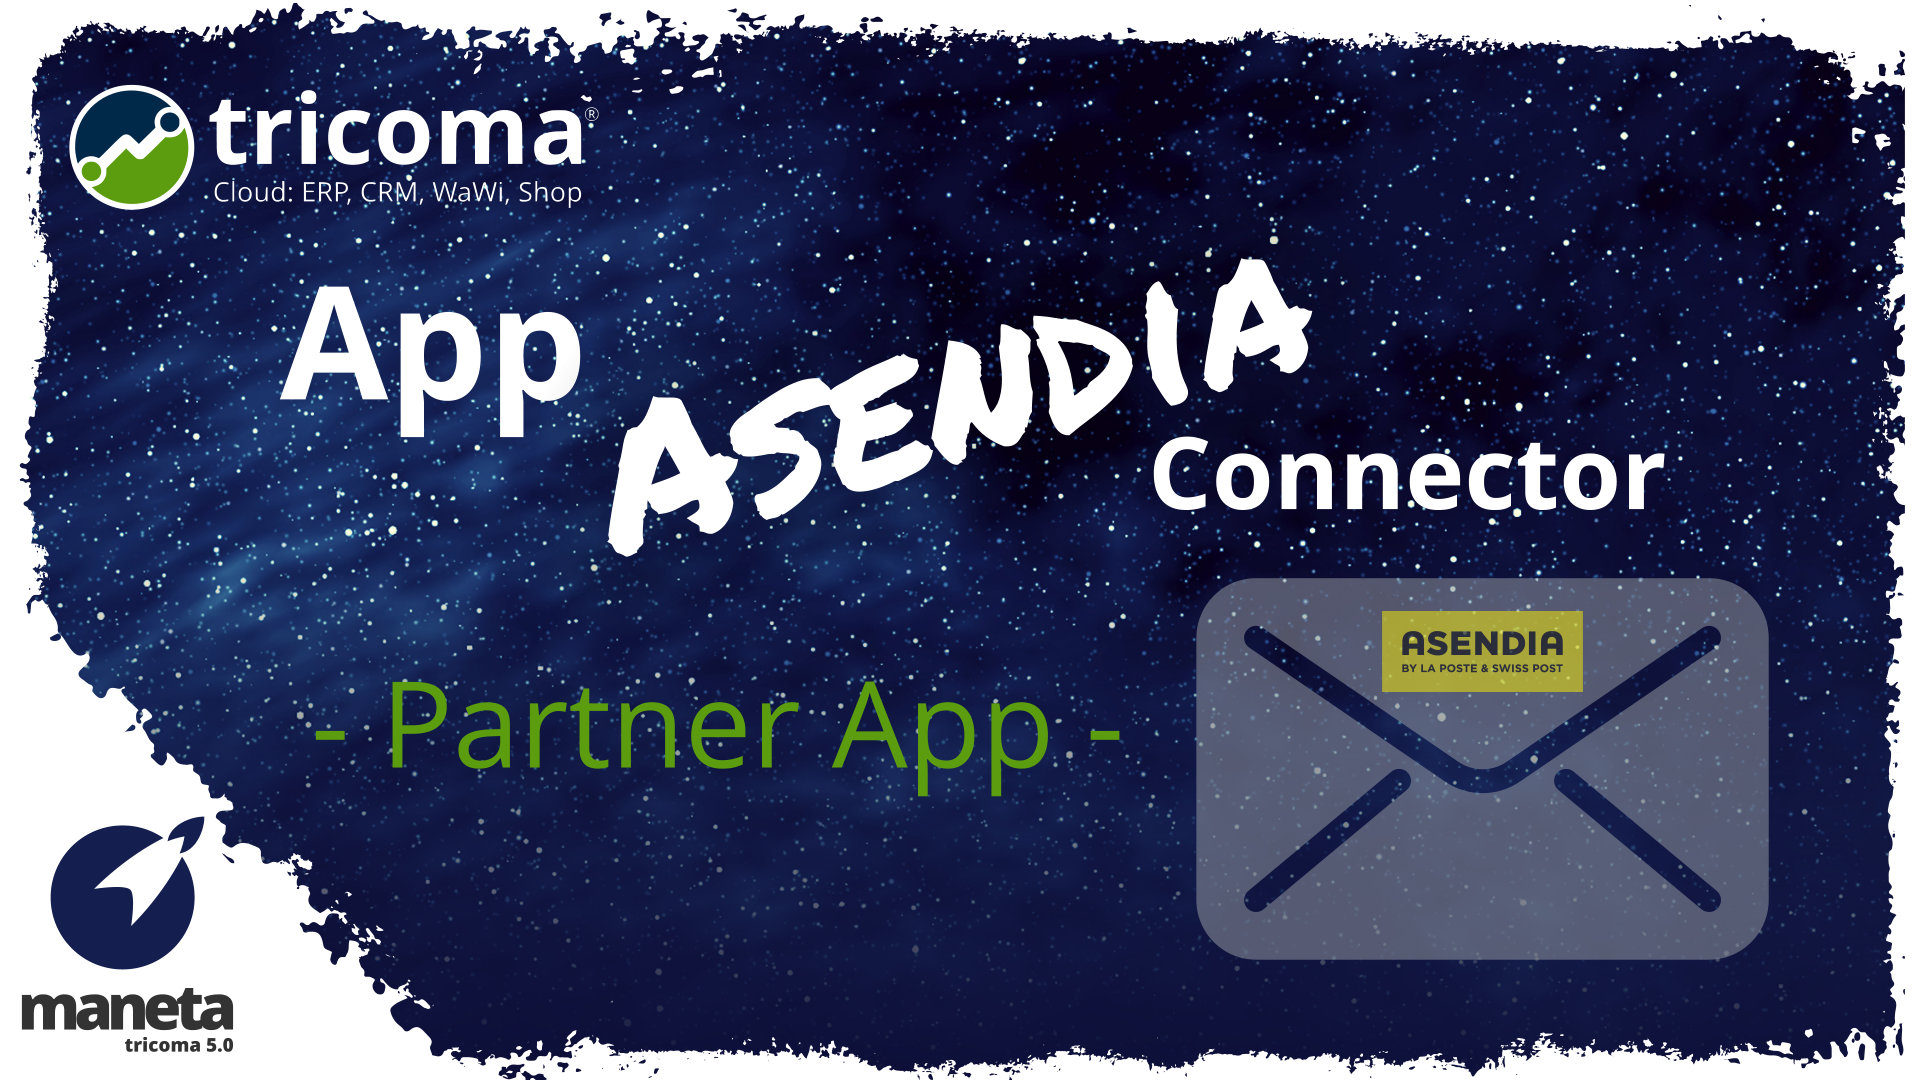 App Asendia Connector